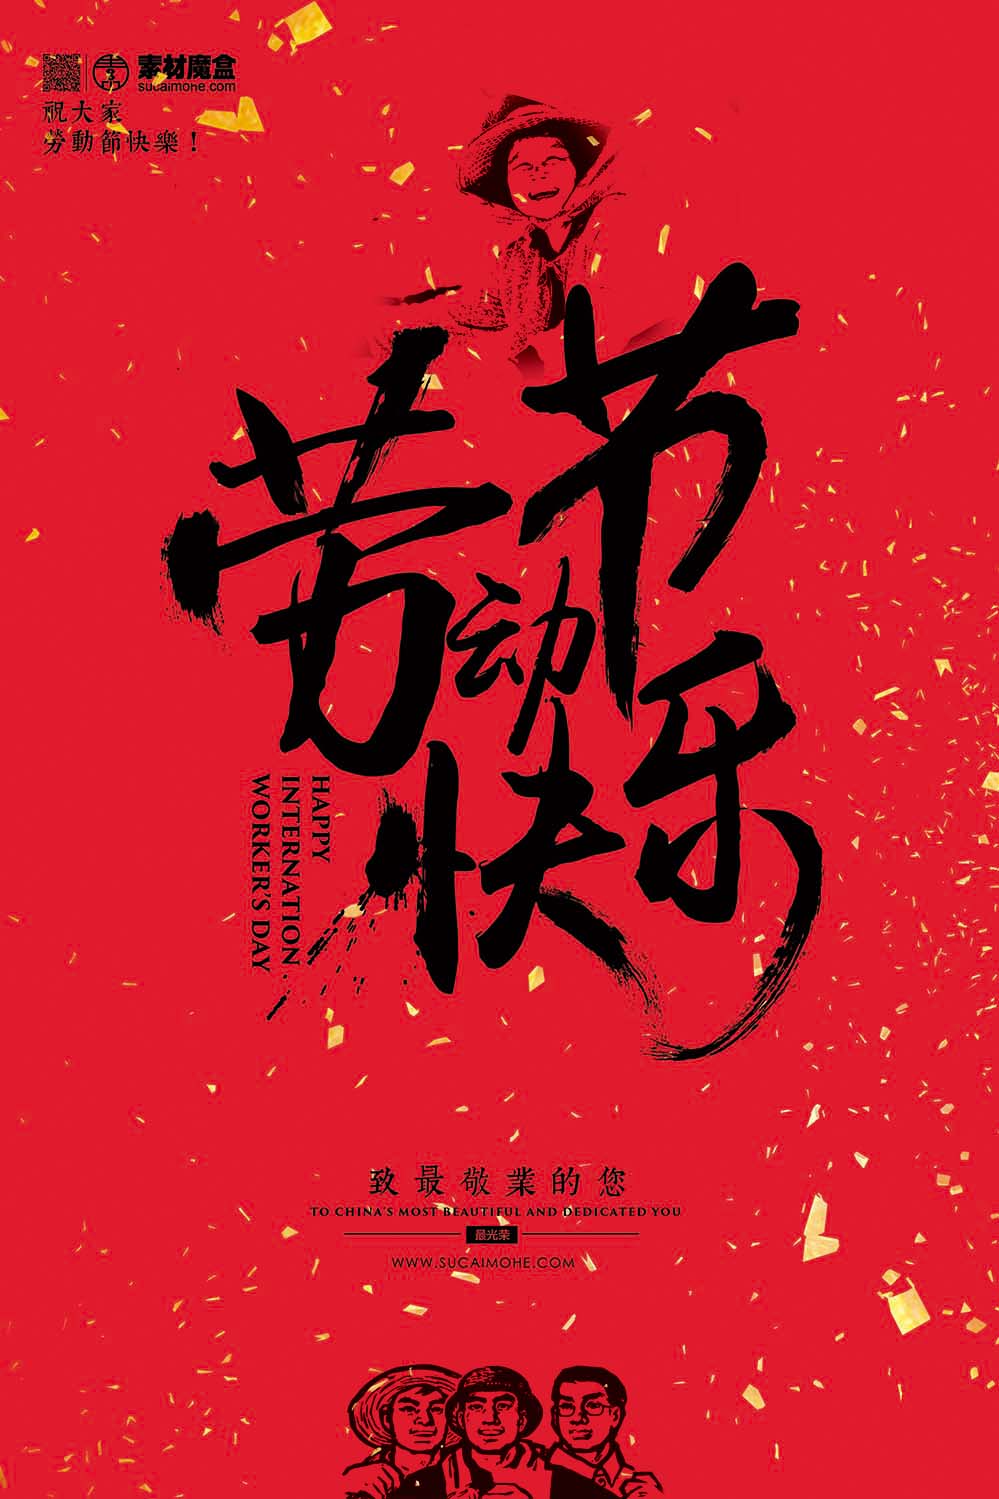 五一5.1劳动节快乐红黑书法海报设计PSD源文件